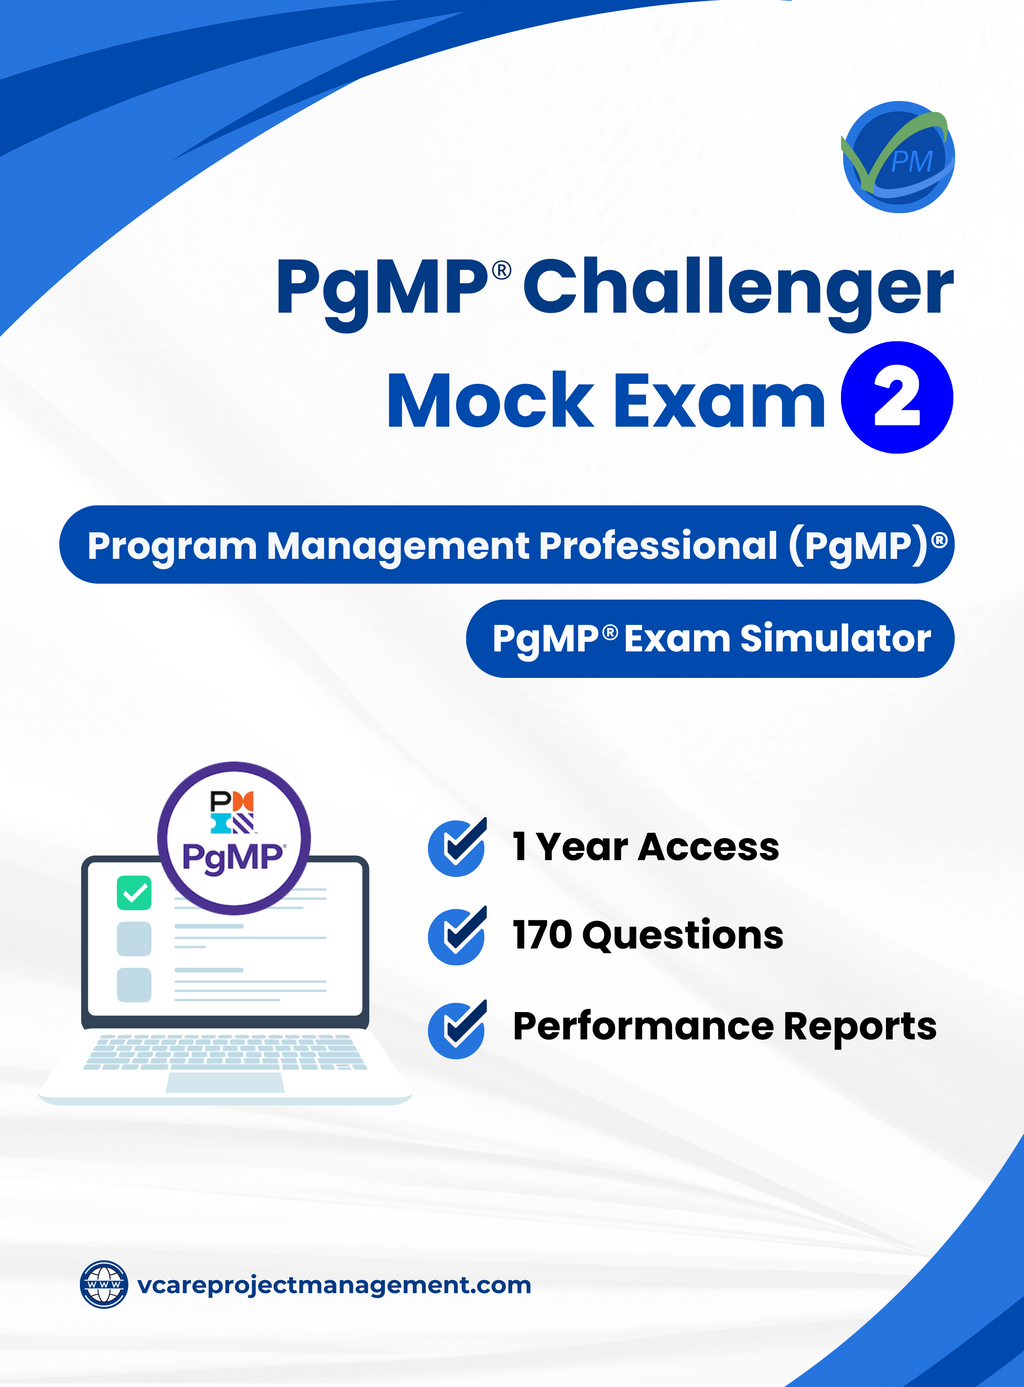 PgMP Challenger Mock Exam 2 (based on SPM5) | Exam Simulator